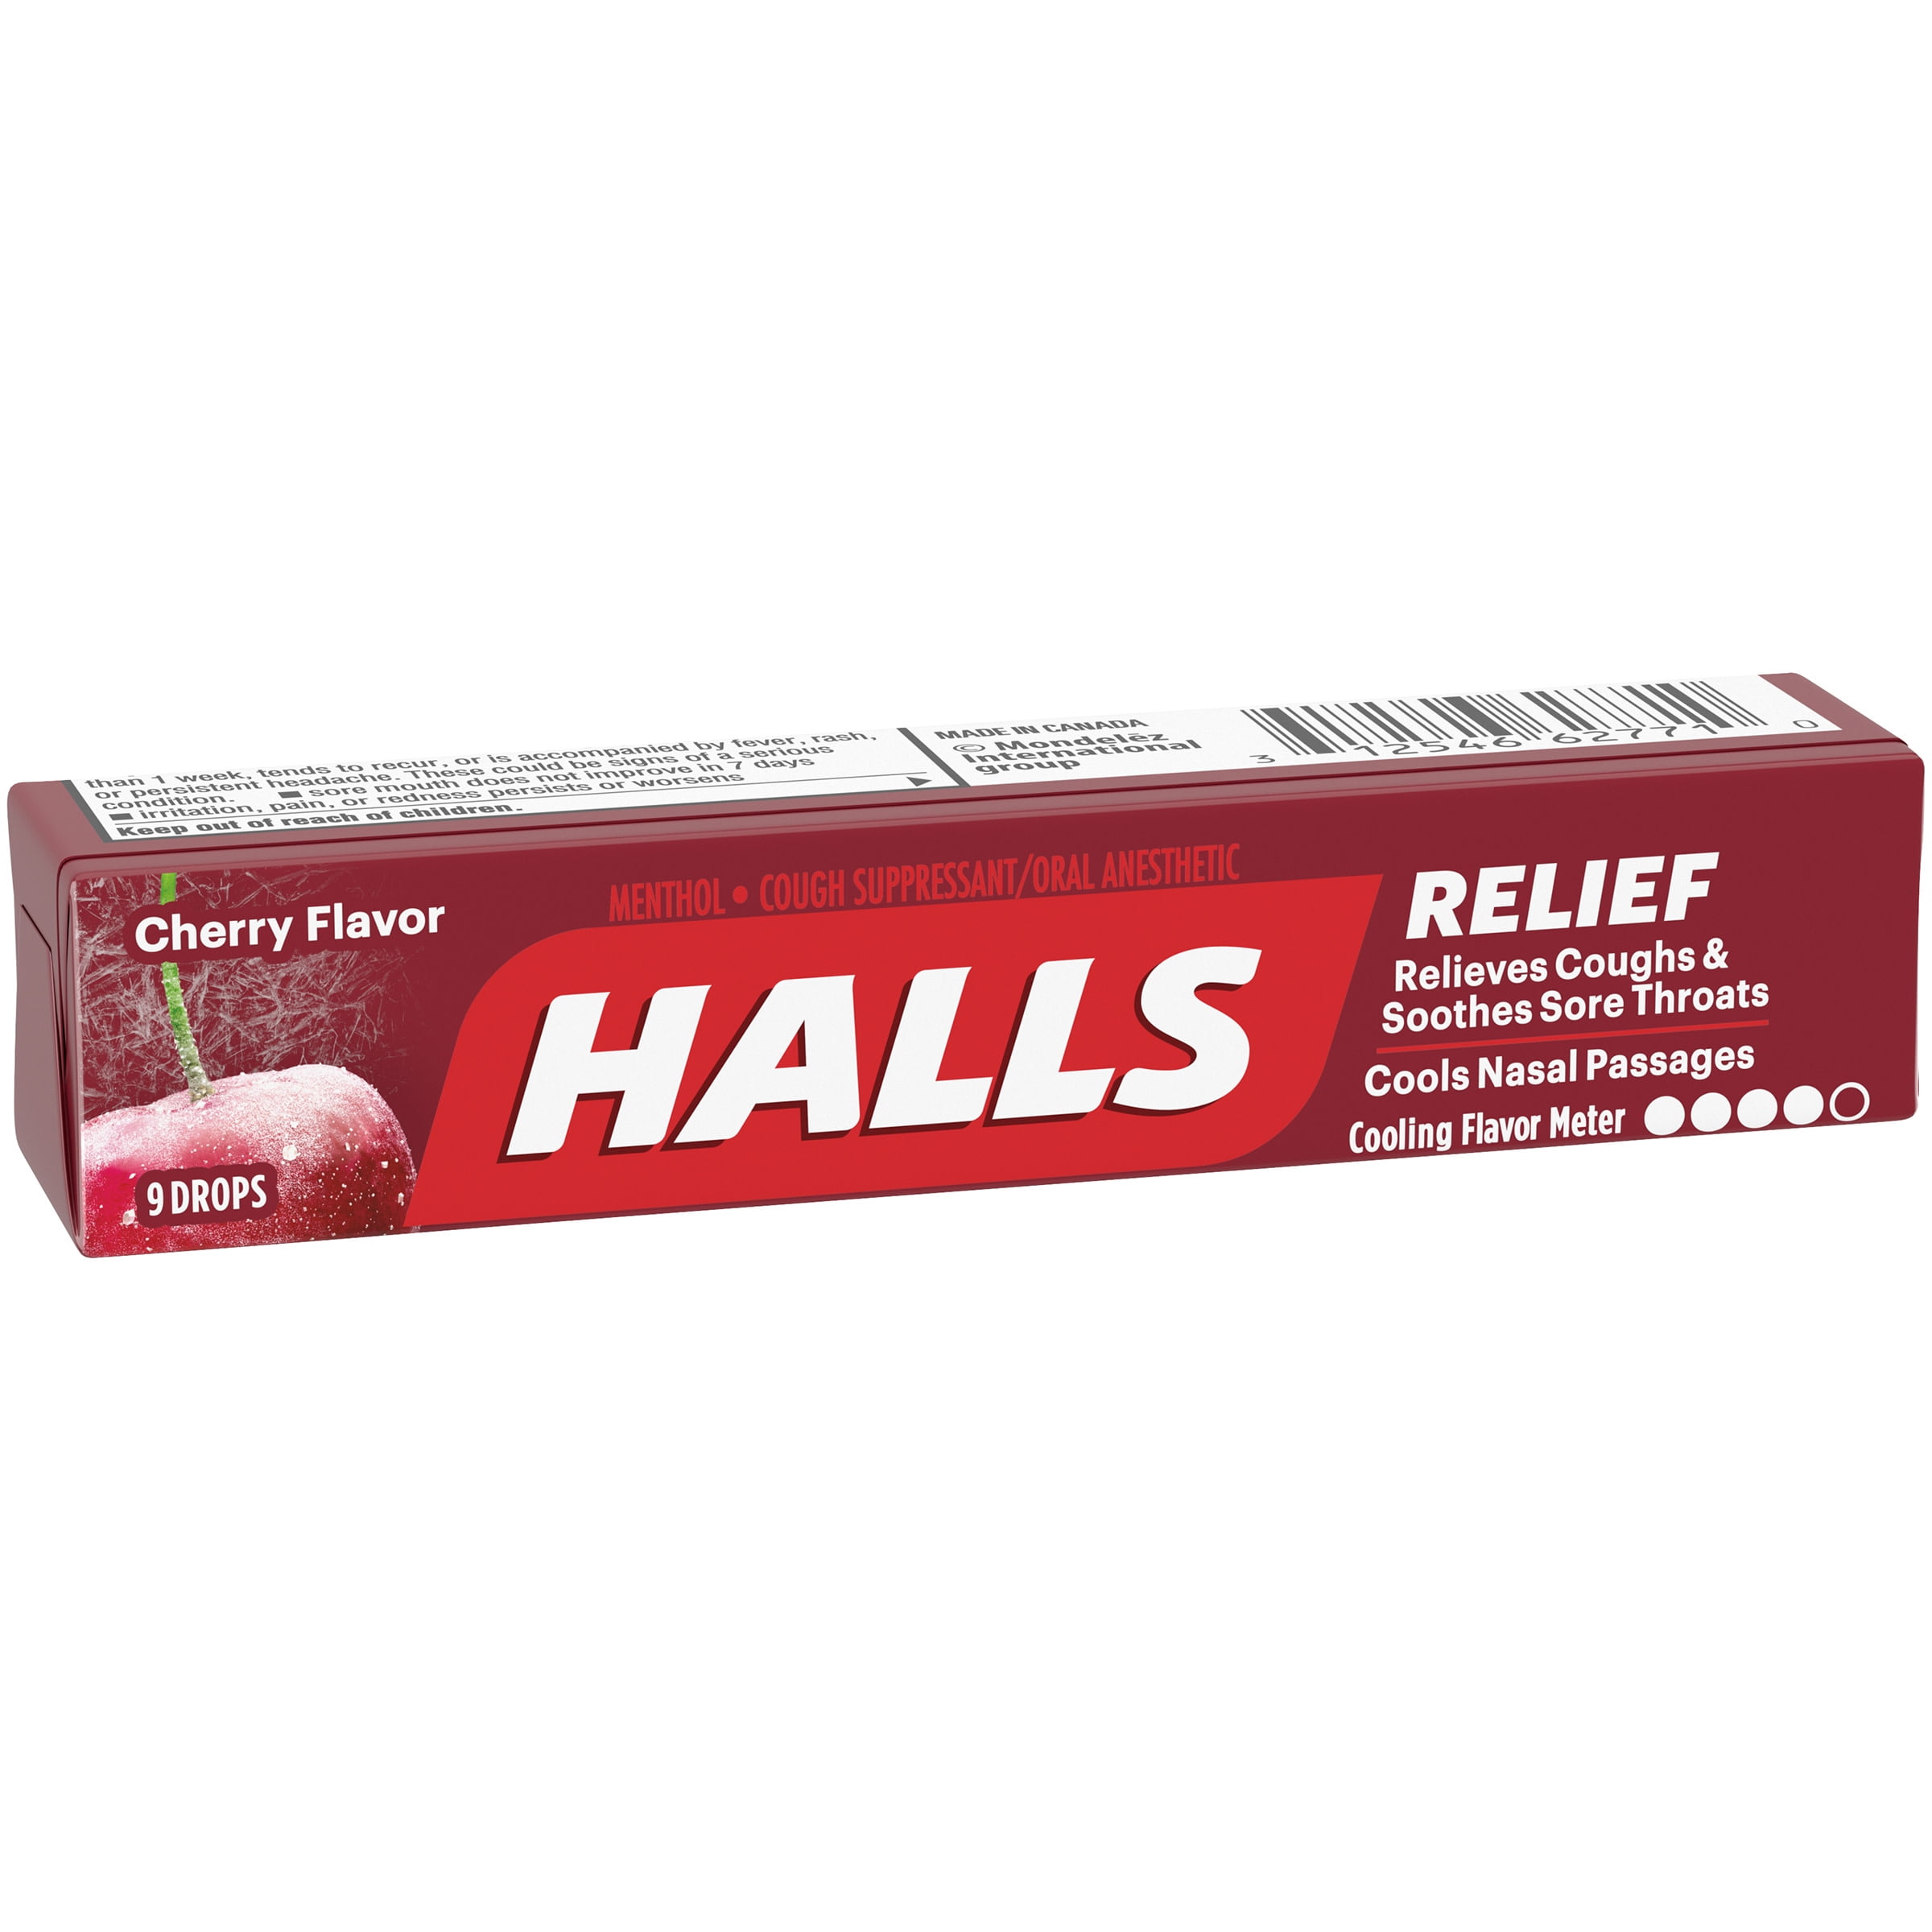 HALLS, Cherry Flavor Cough Drops, 9 Drops